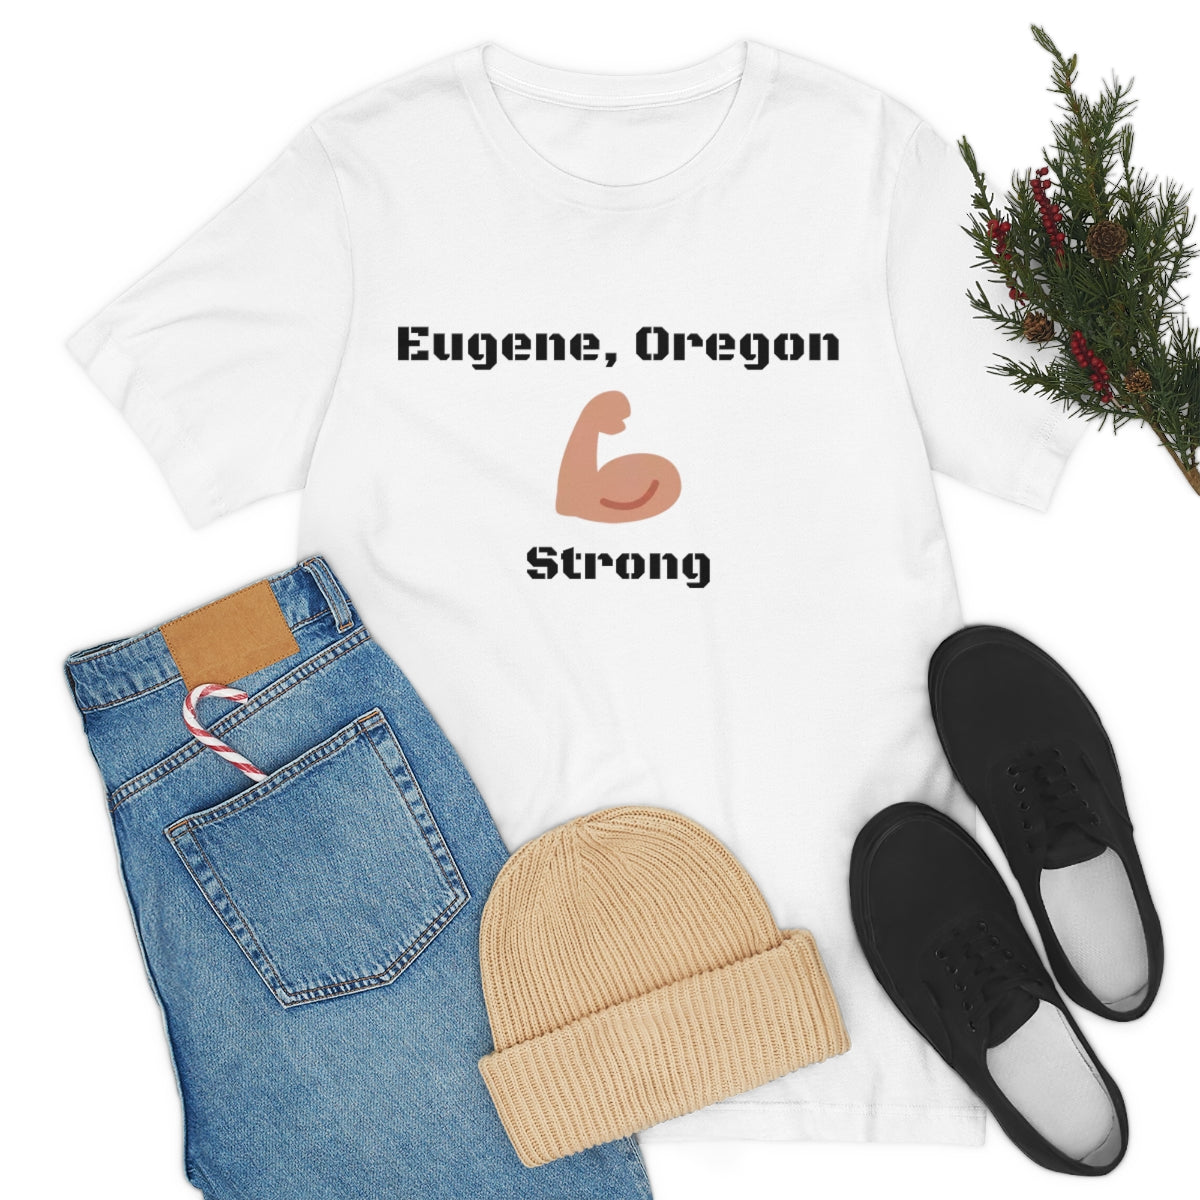 Eugene, Oregon Strong - Designed - Unisex Short Sleeve Tee.